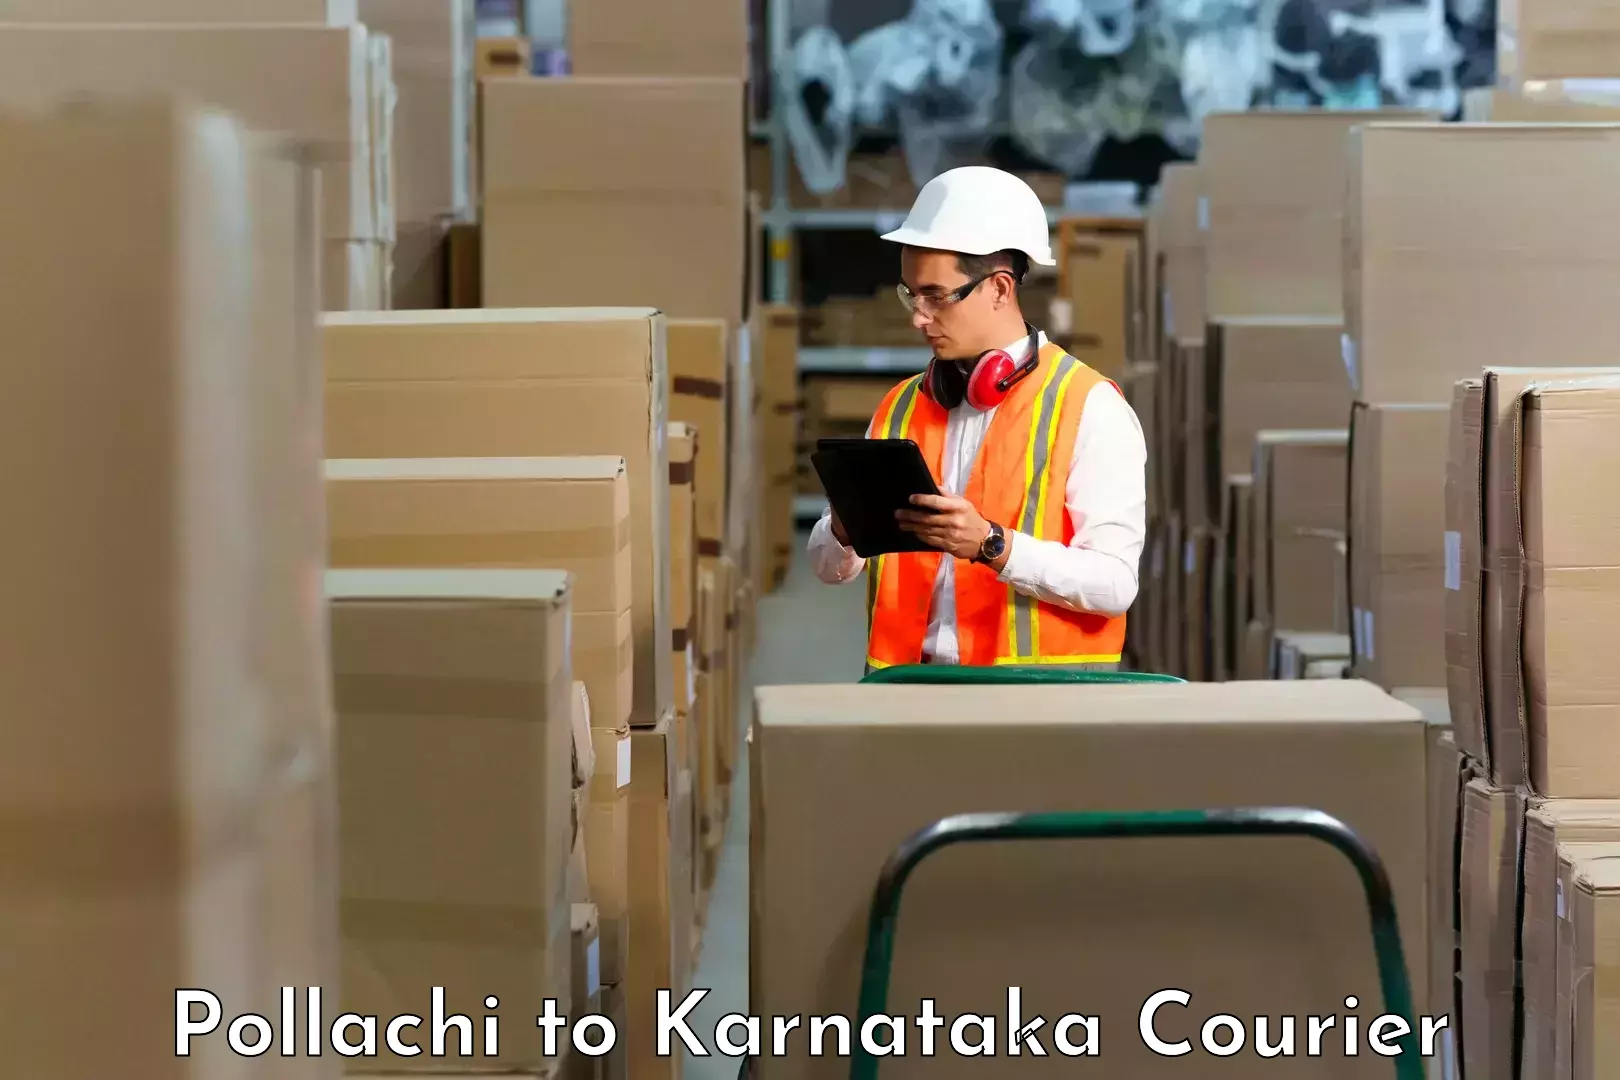 Easy access courier services Pollachi to Bidar